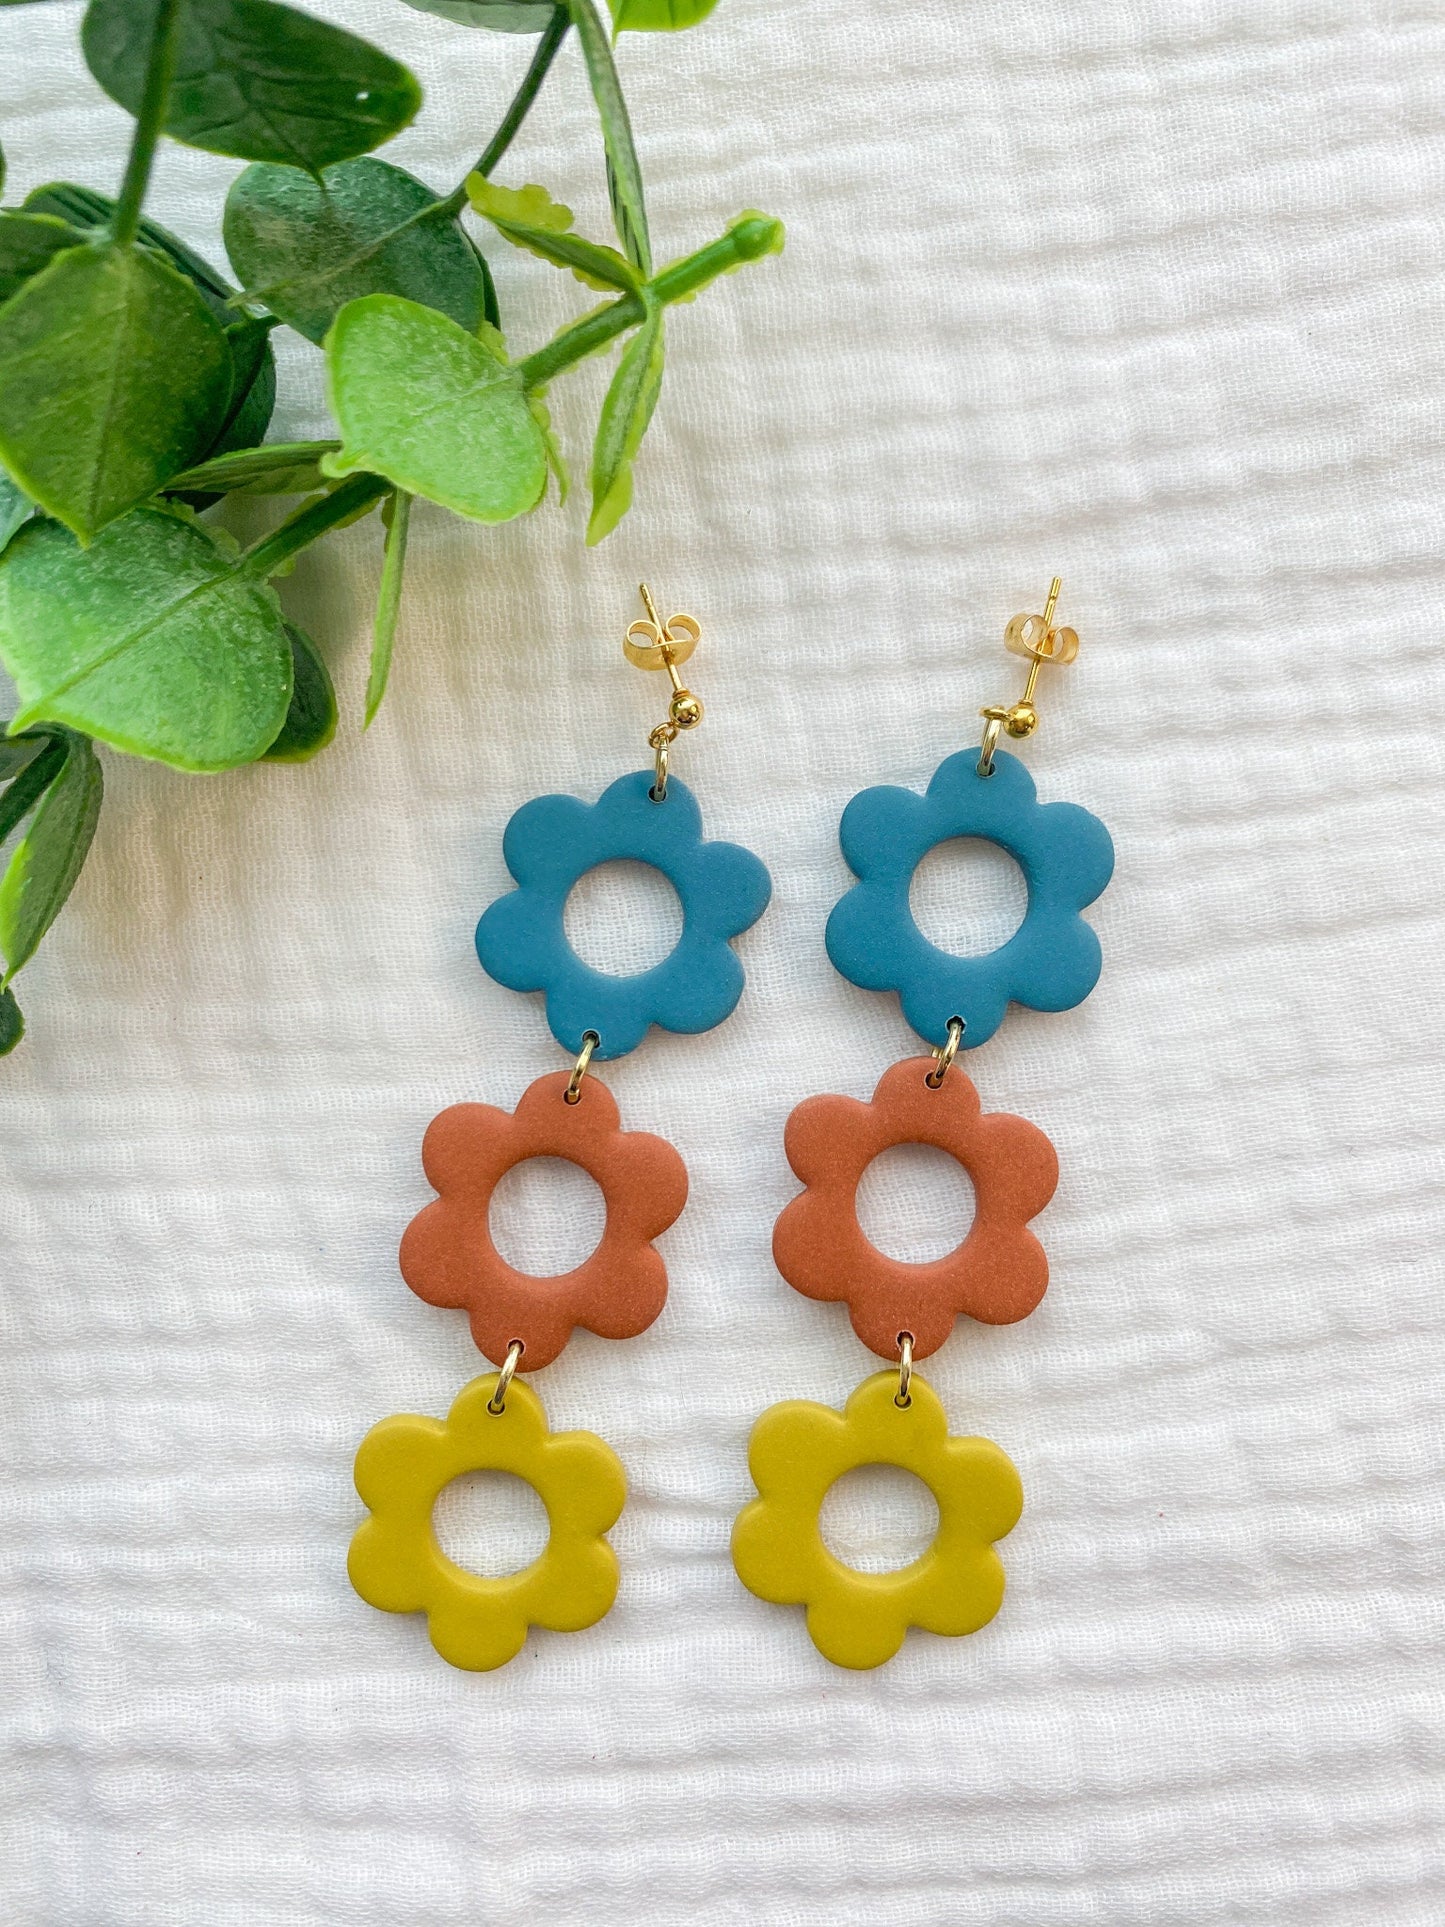 Flower Power Hippie Earrings | 60's Earrings | Mod Earrings | Funky Clay Earrings | Lightweight | Fun and Bright | | Spring Color Earrings